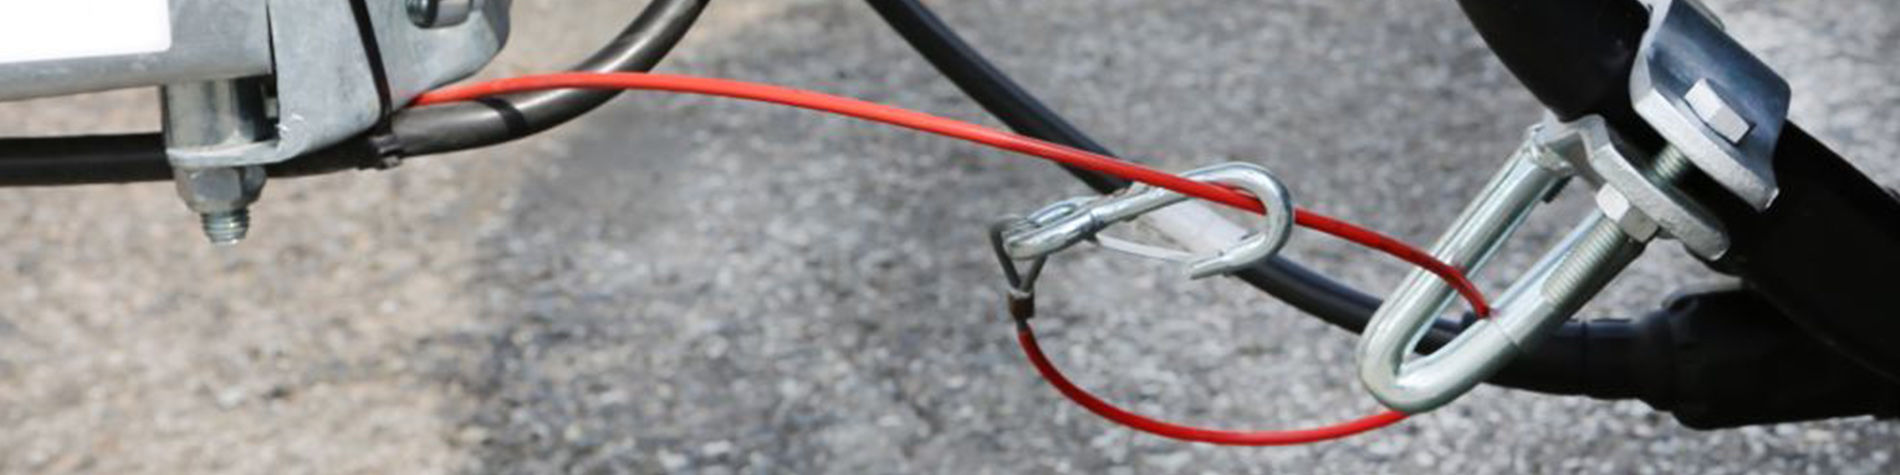 Fixer correctement la corde de sécurité à la remorque - TCS Suisse